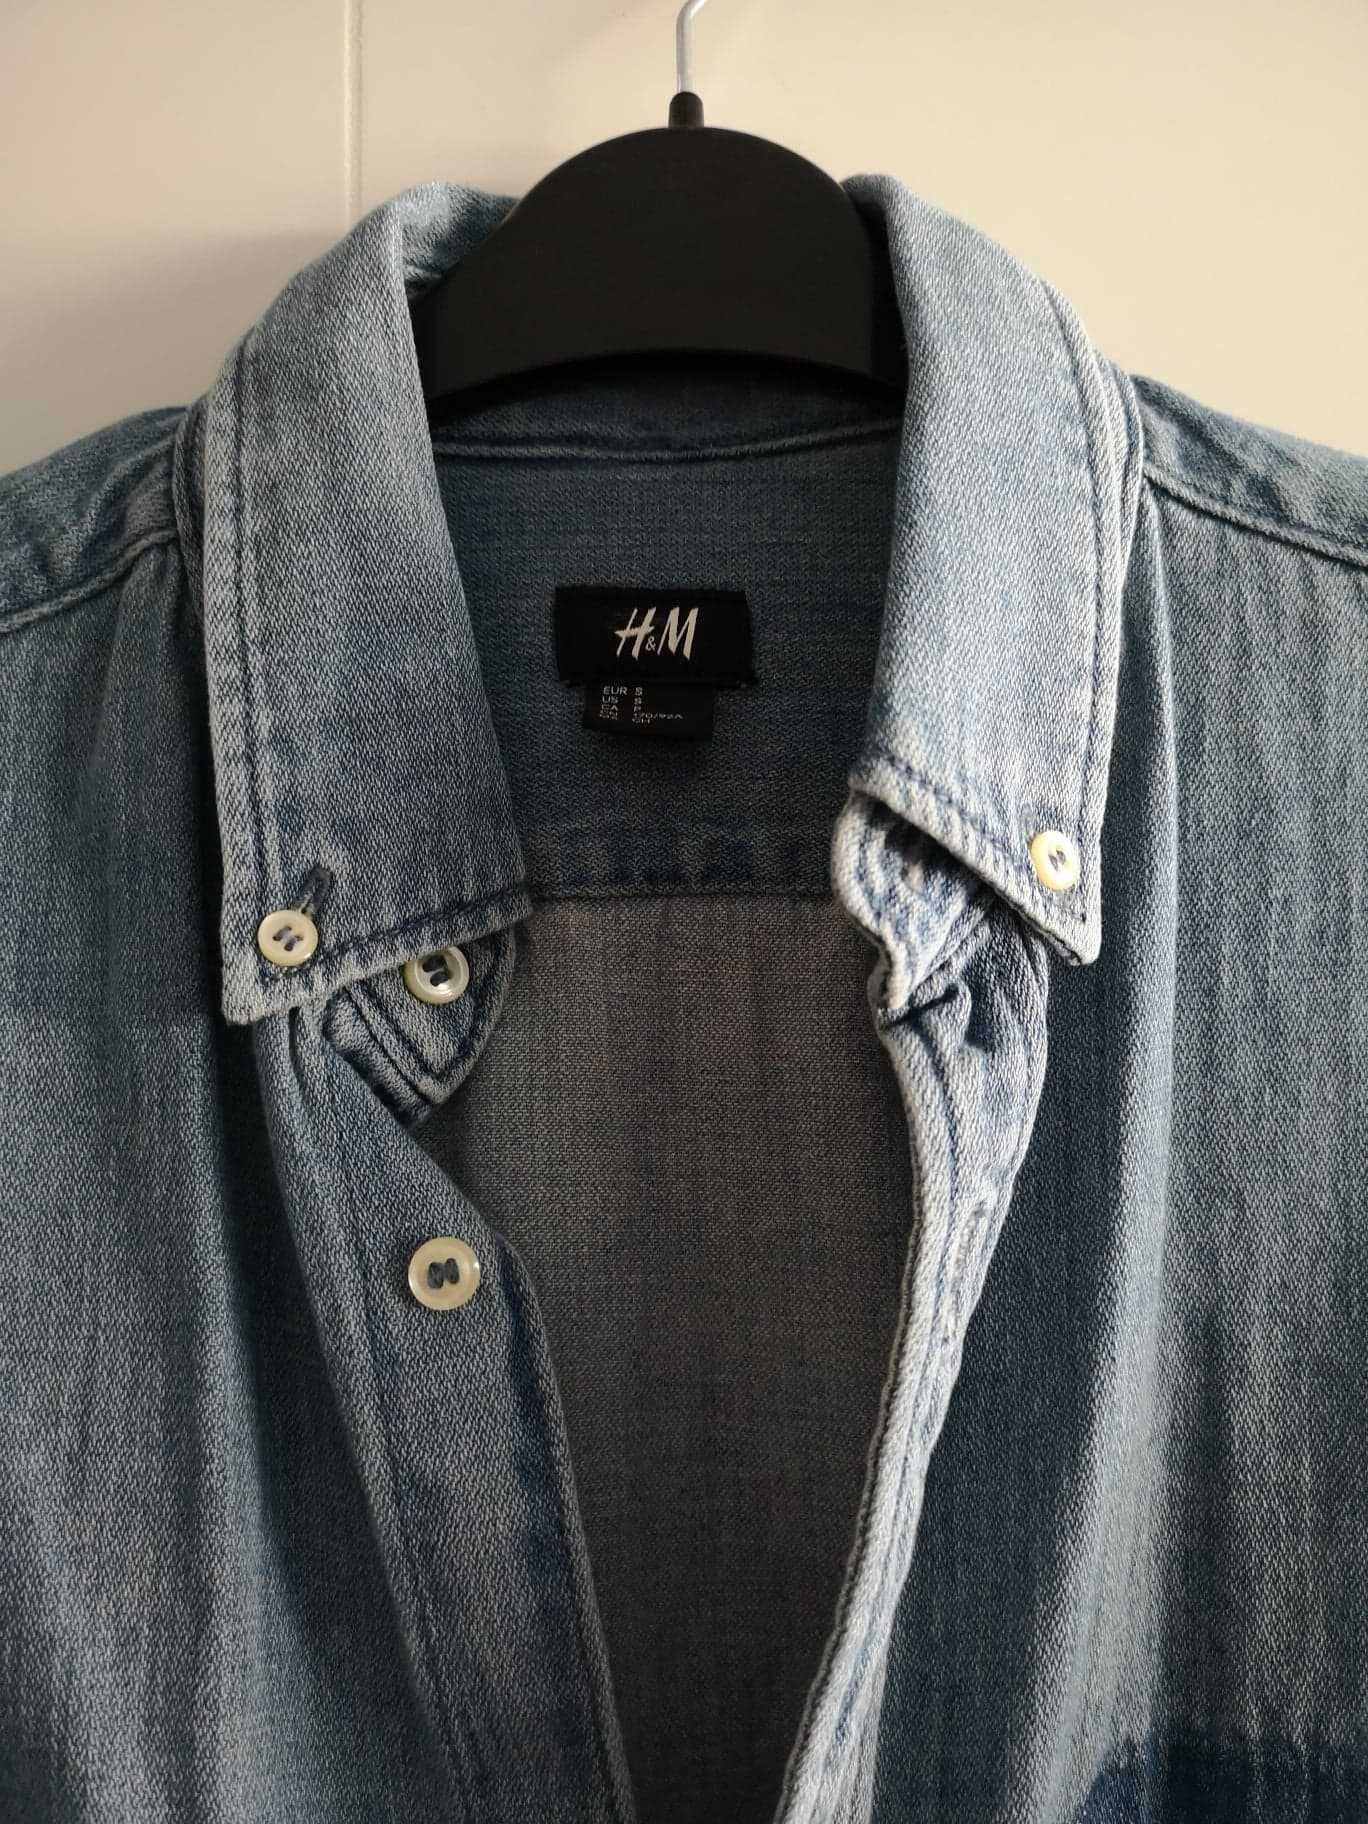 Nowa męska koszula jeansowa jasny jeans długi rękaw H&M rozmiar S